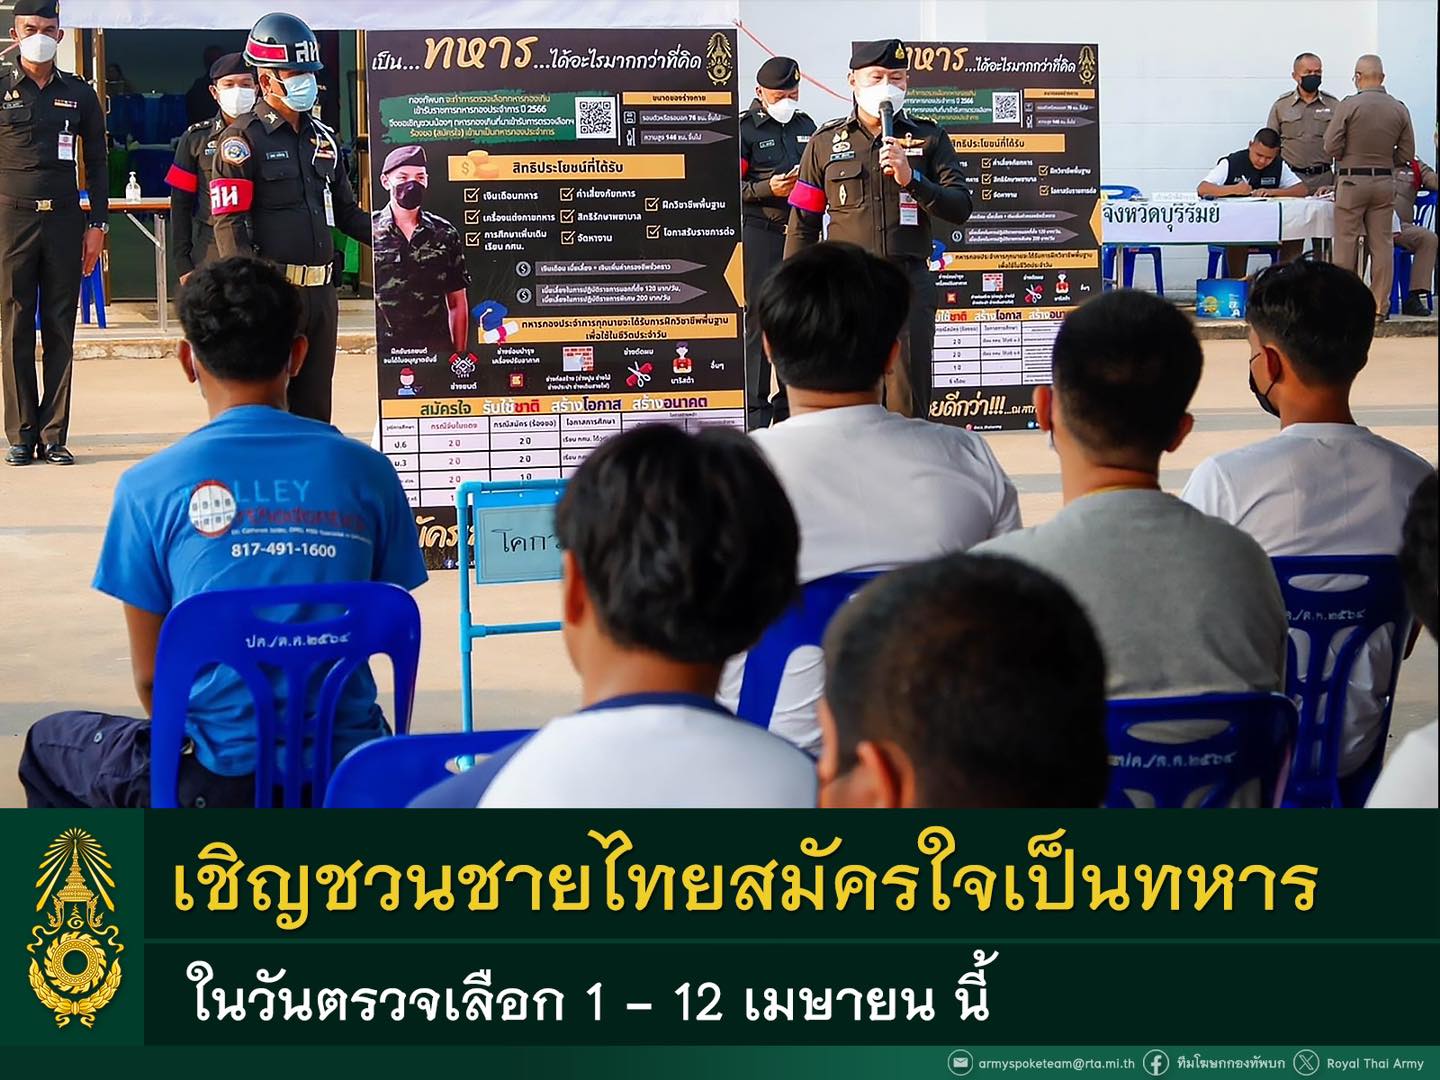 ทบ. เชิญชวนชายไทยสมัครใจเป็นทหารในห้วงตรวจเลือก 1 - 12 เมษายน นี้